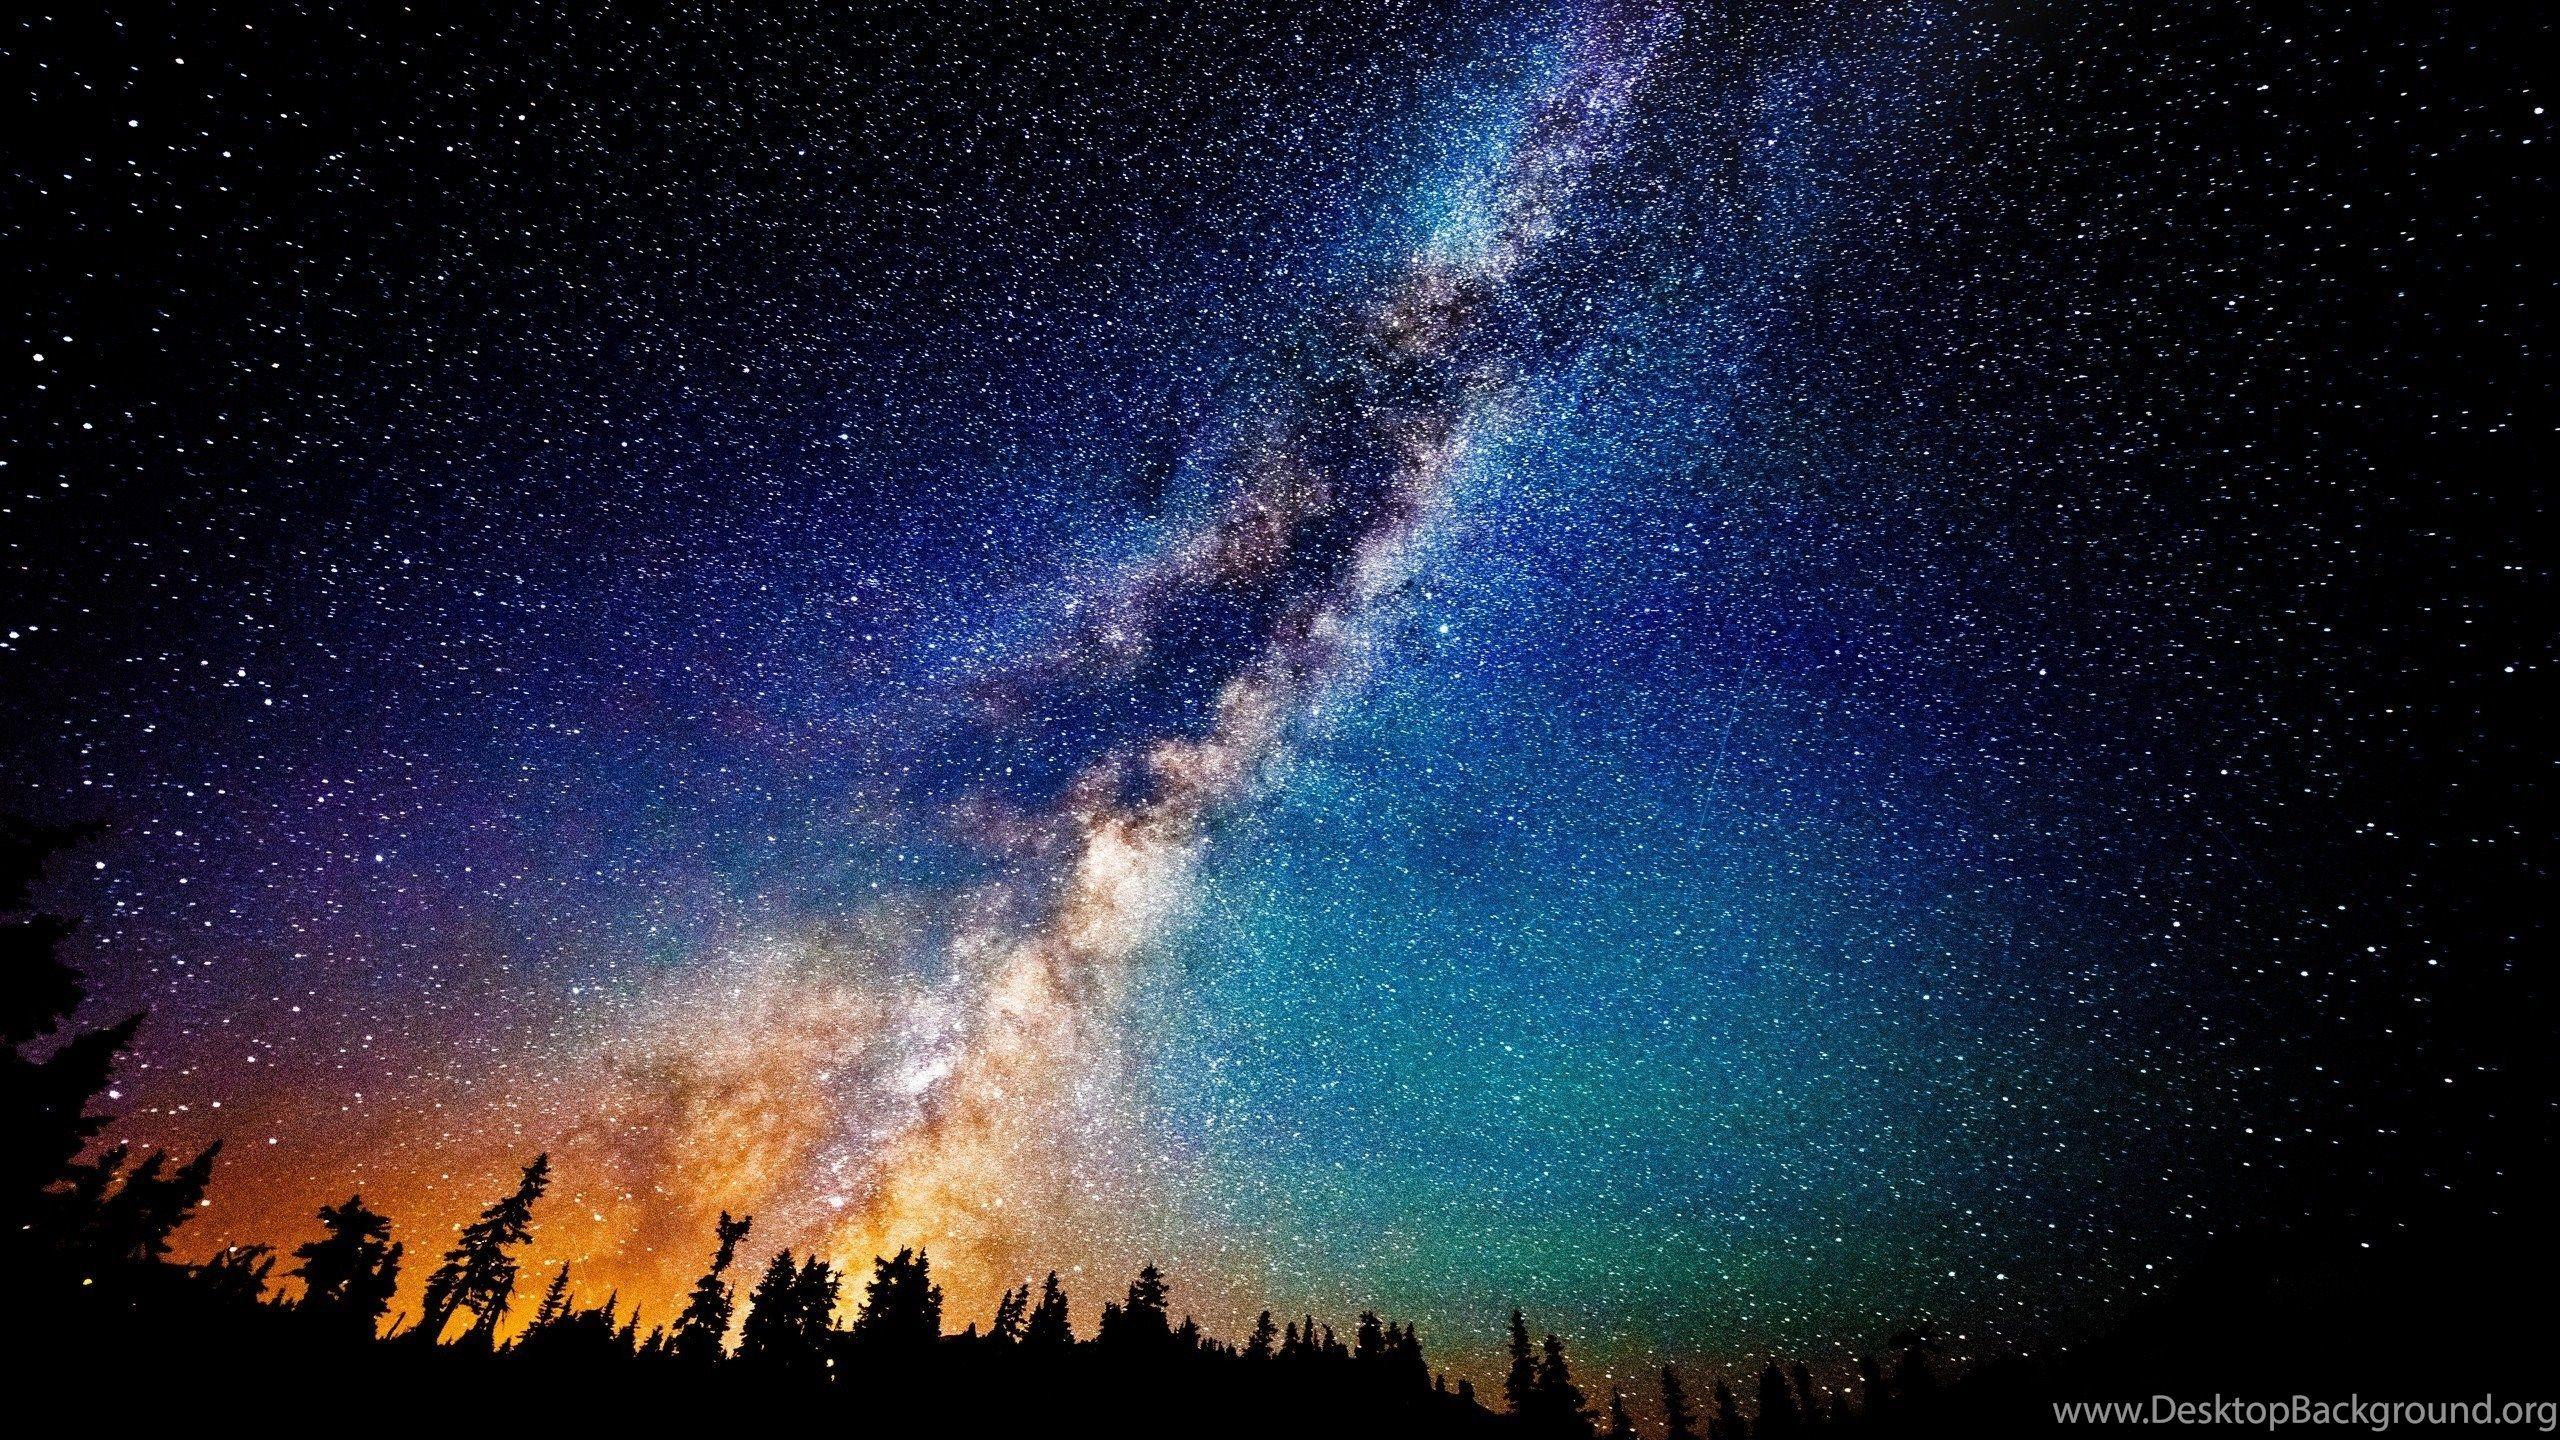 Andromeda Galaxy Wallpapers Top Free Andromeda Galaxy